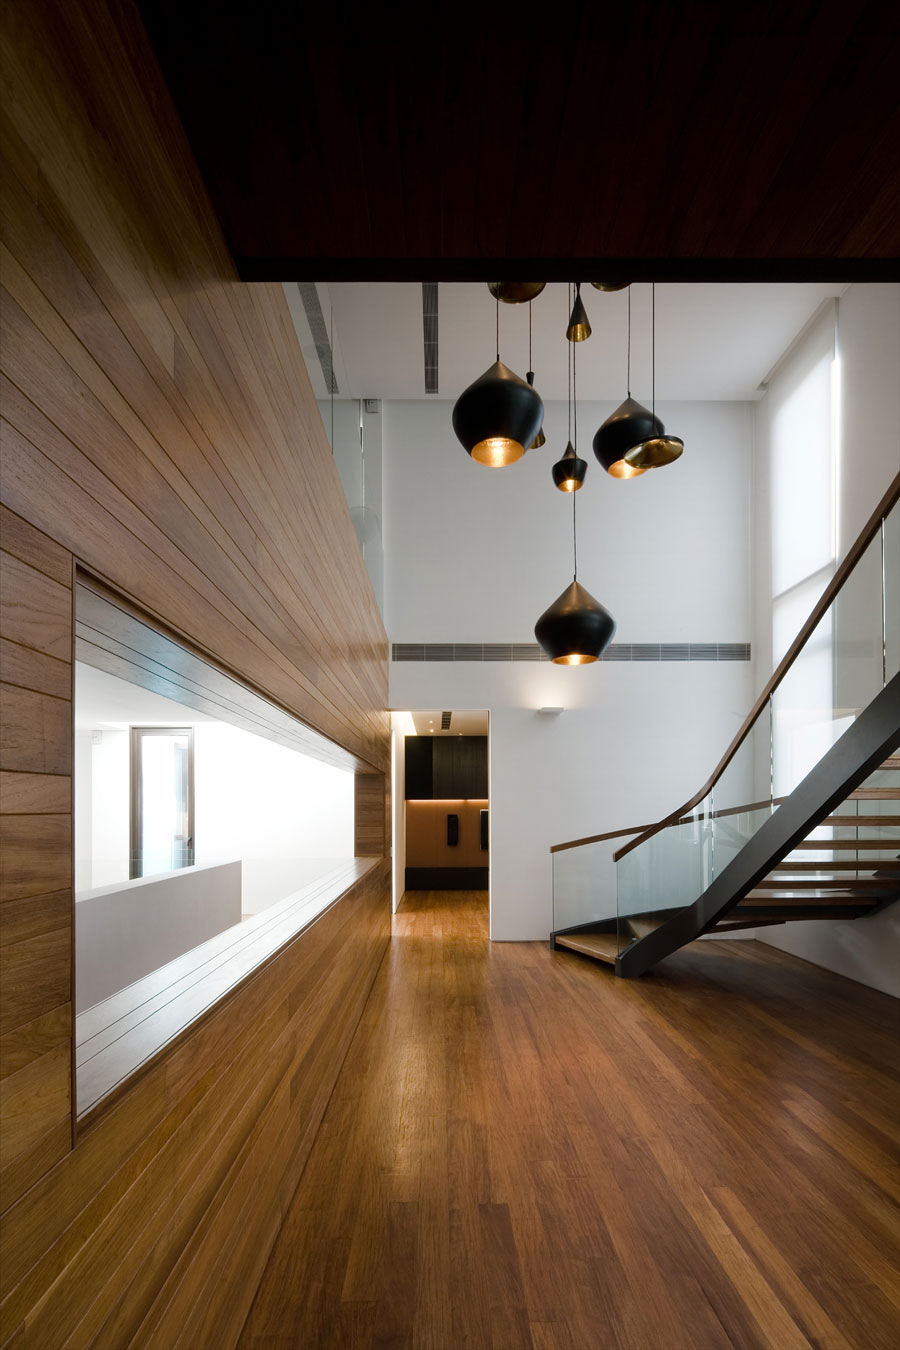 Metallic Exterior Meets Modern Interiors At Singapore's